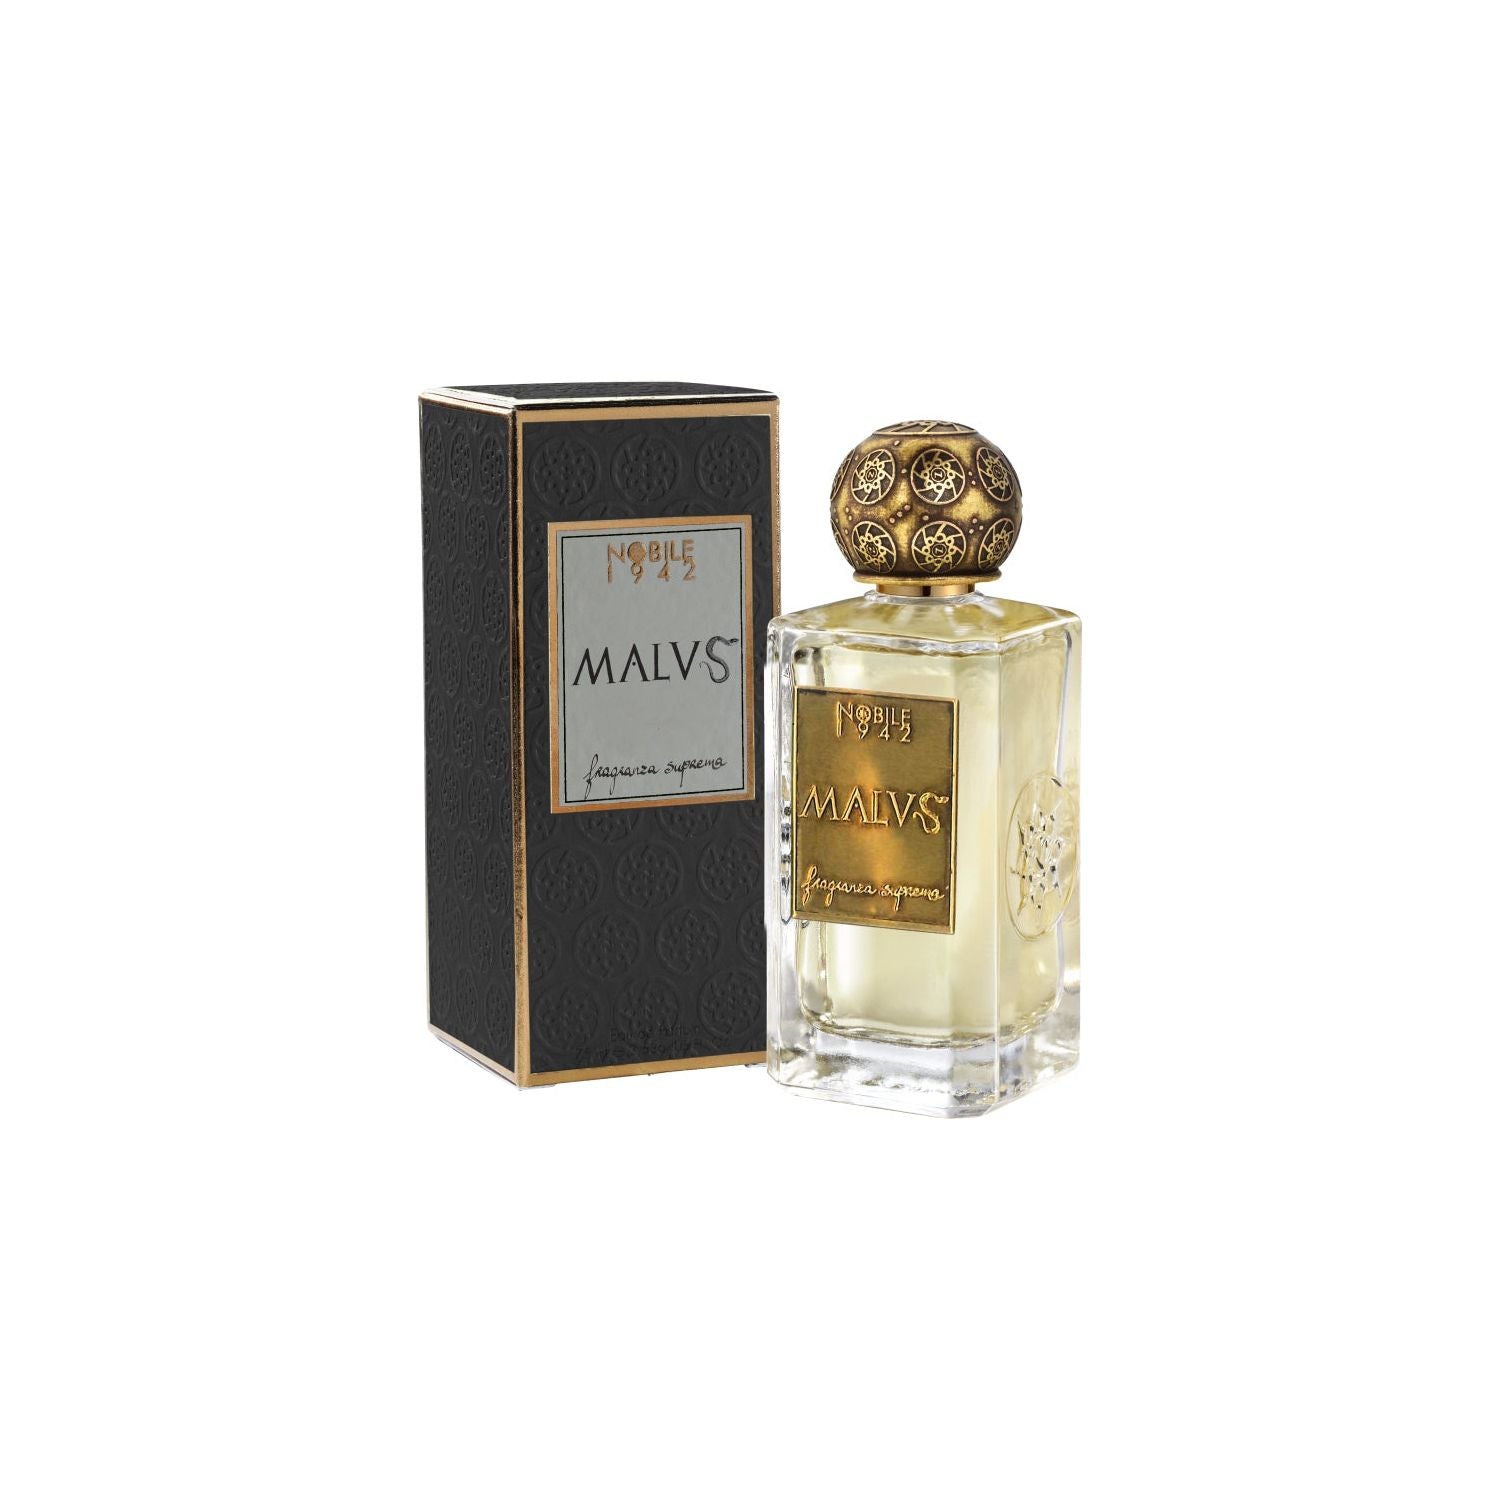 Nobile 1942 - Malvs - Eau de Parfum-75 ml